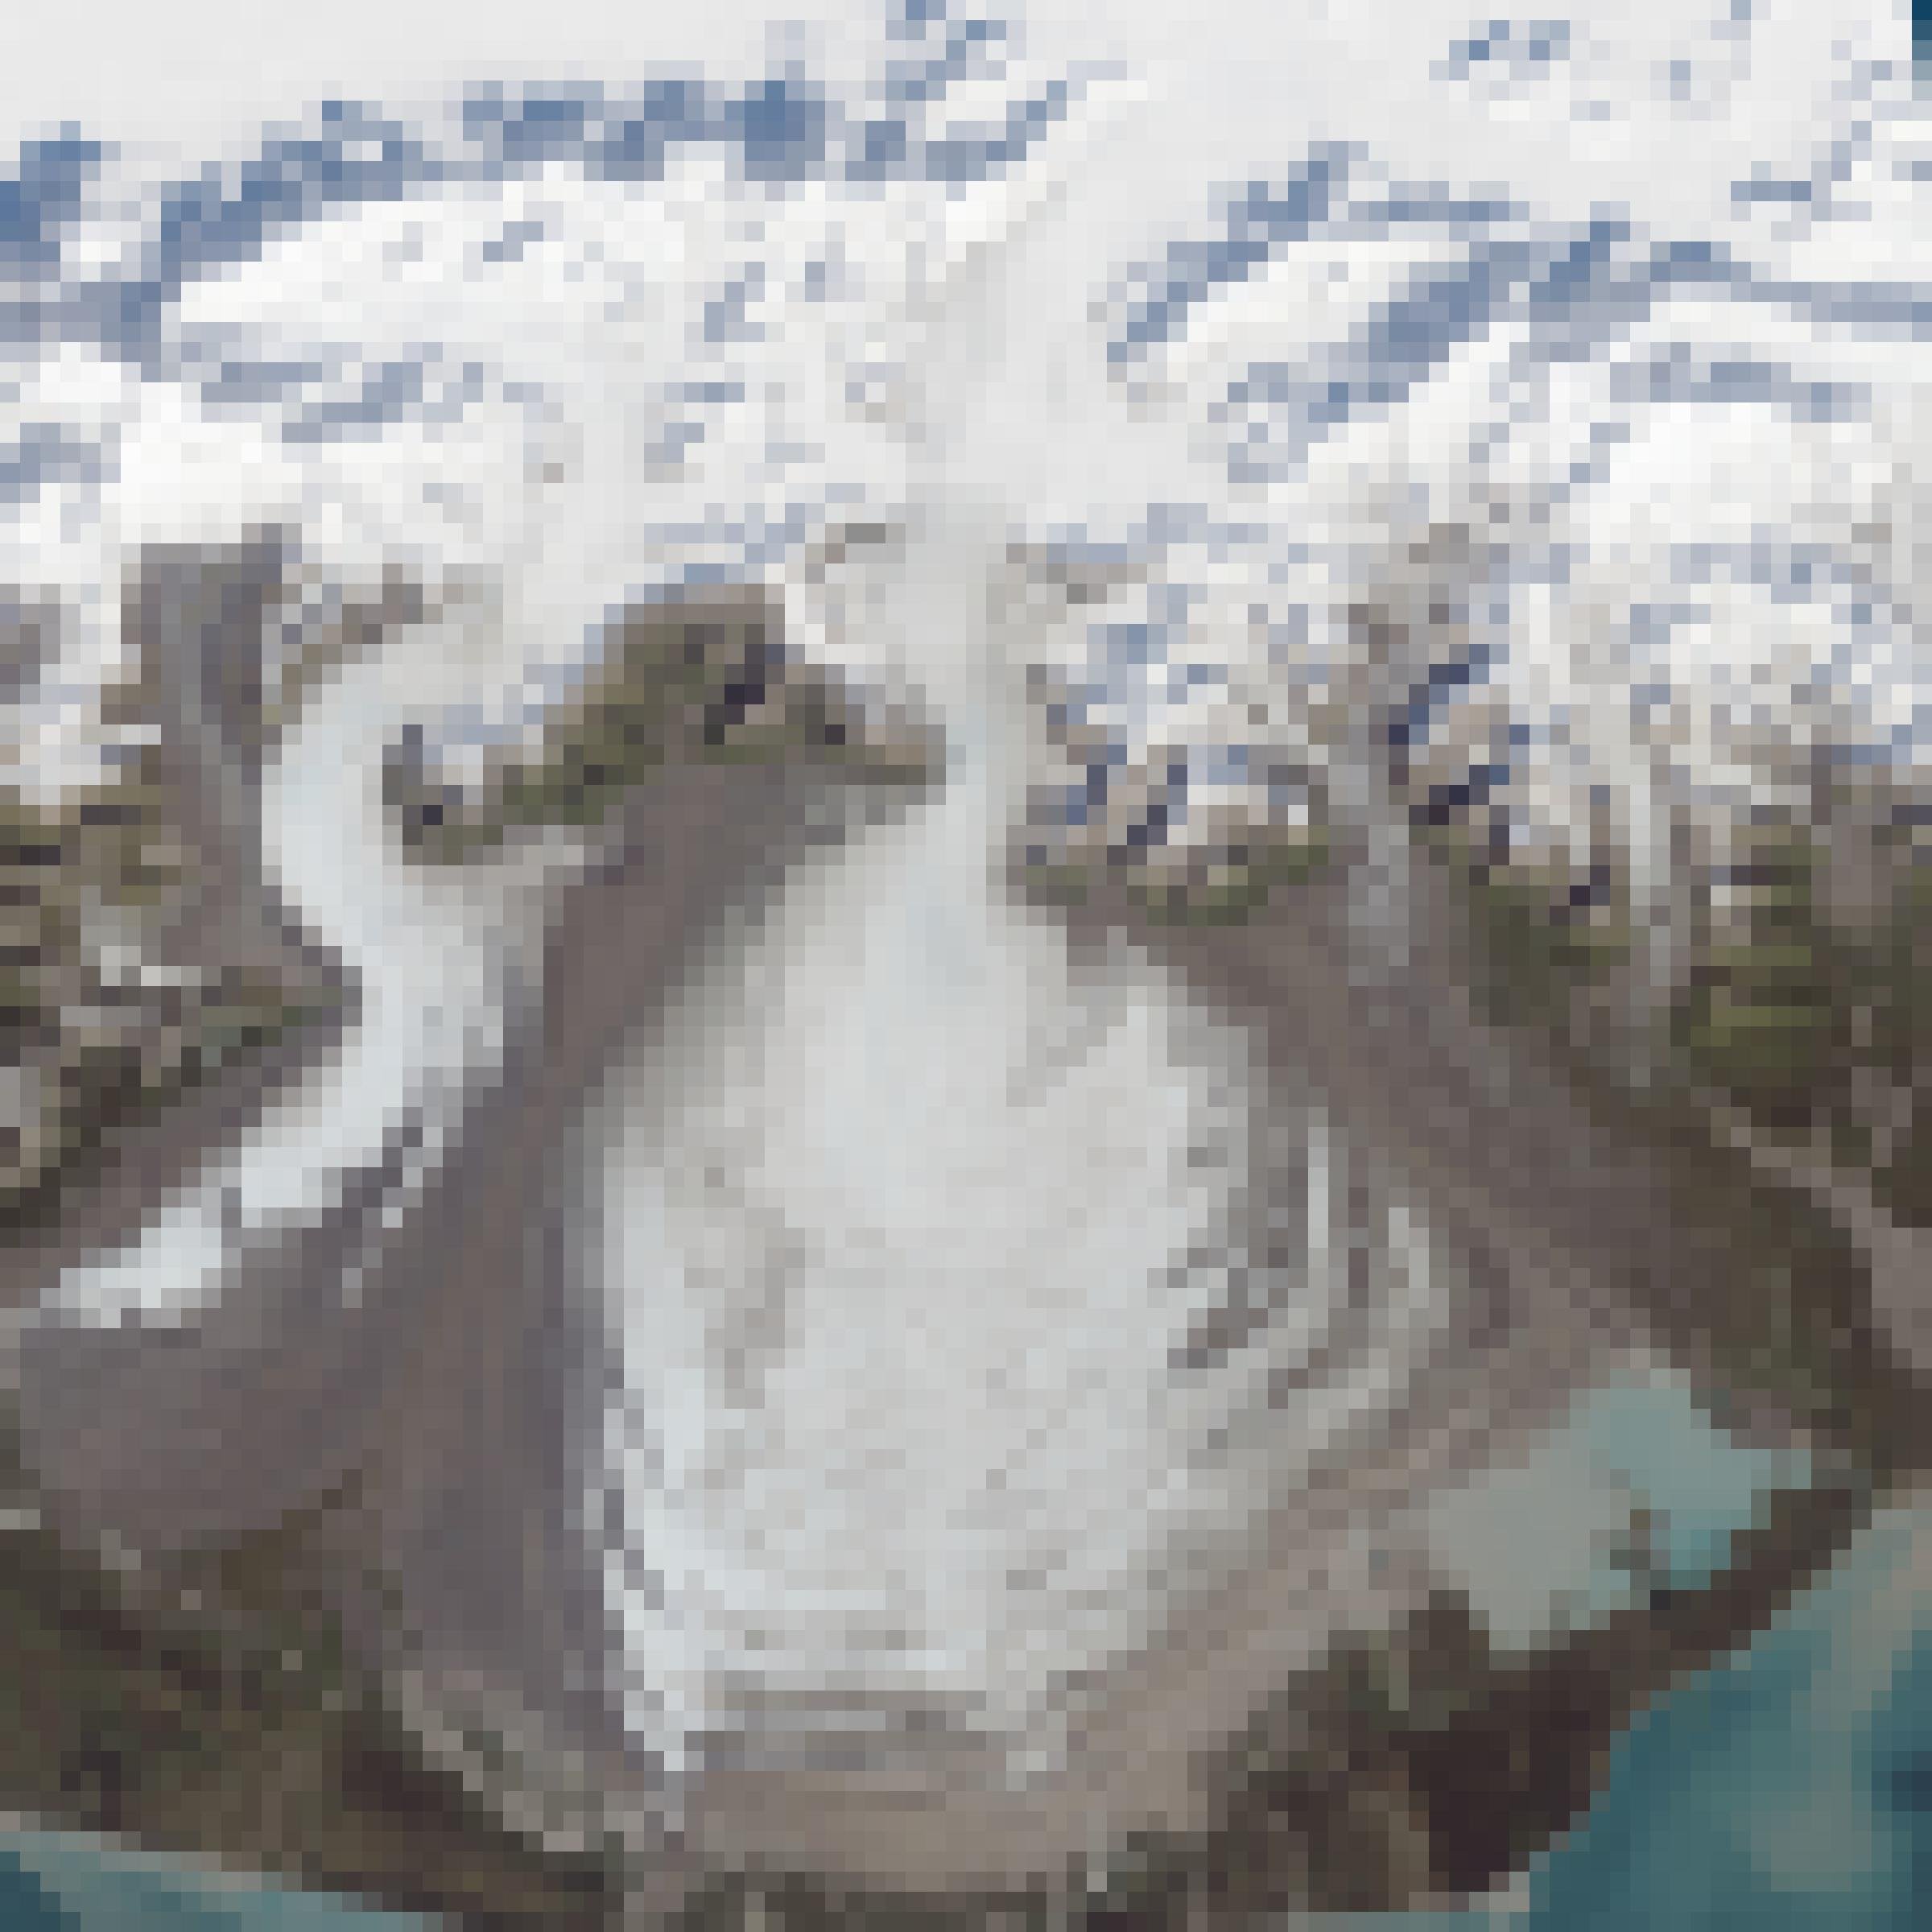 Satellitenbild mit schnee-/eisbedeckten Bergen, südlich mit halbrunder und Gletscherzunge